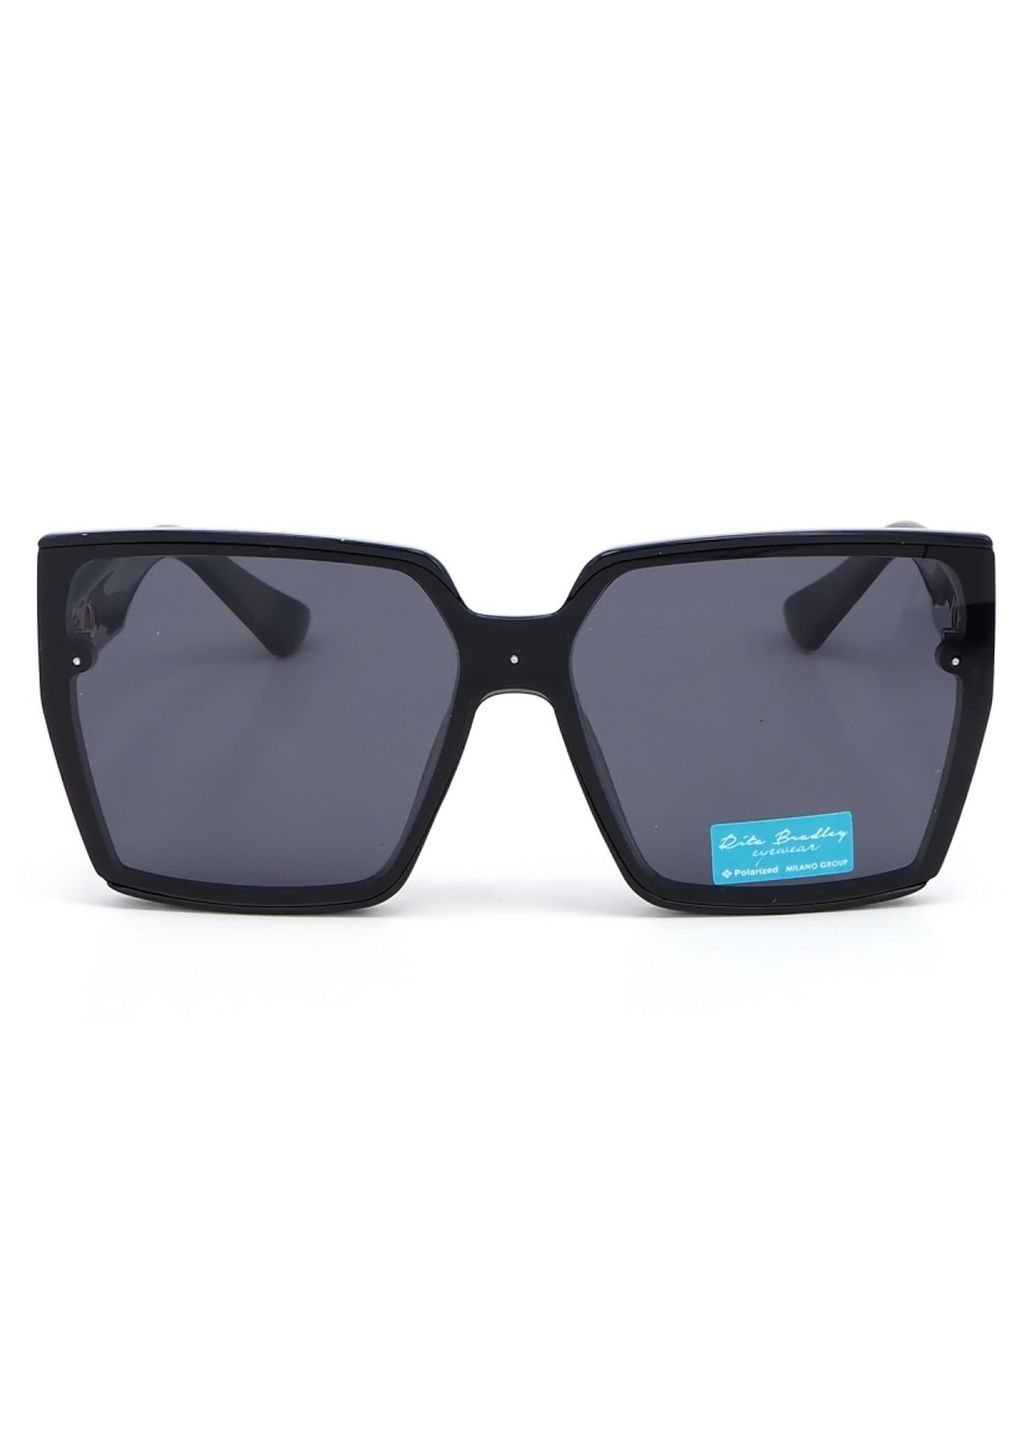 Купить Женские солнцезащитные очки Rita Bradley с поляризацией RB733 112087 в интернет-магазине